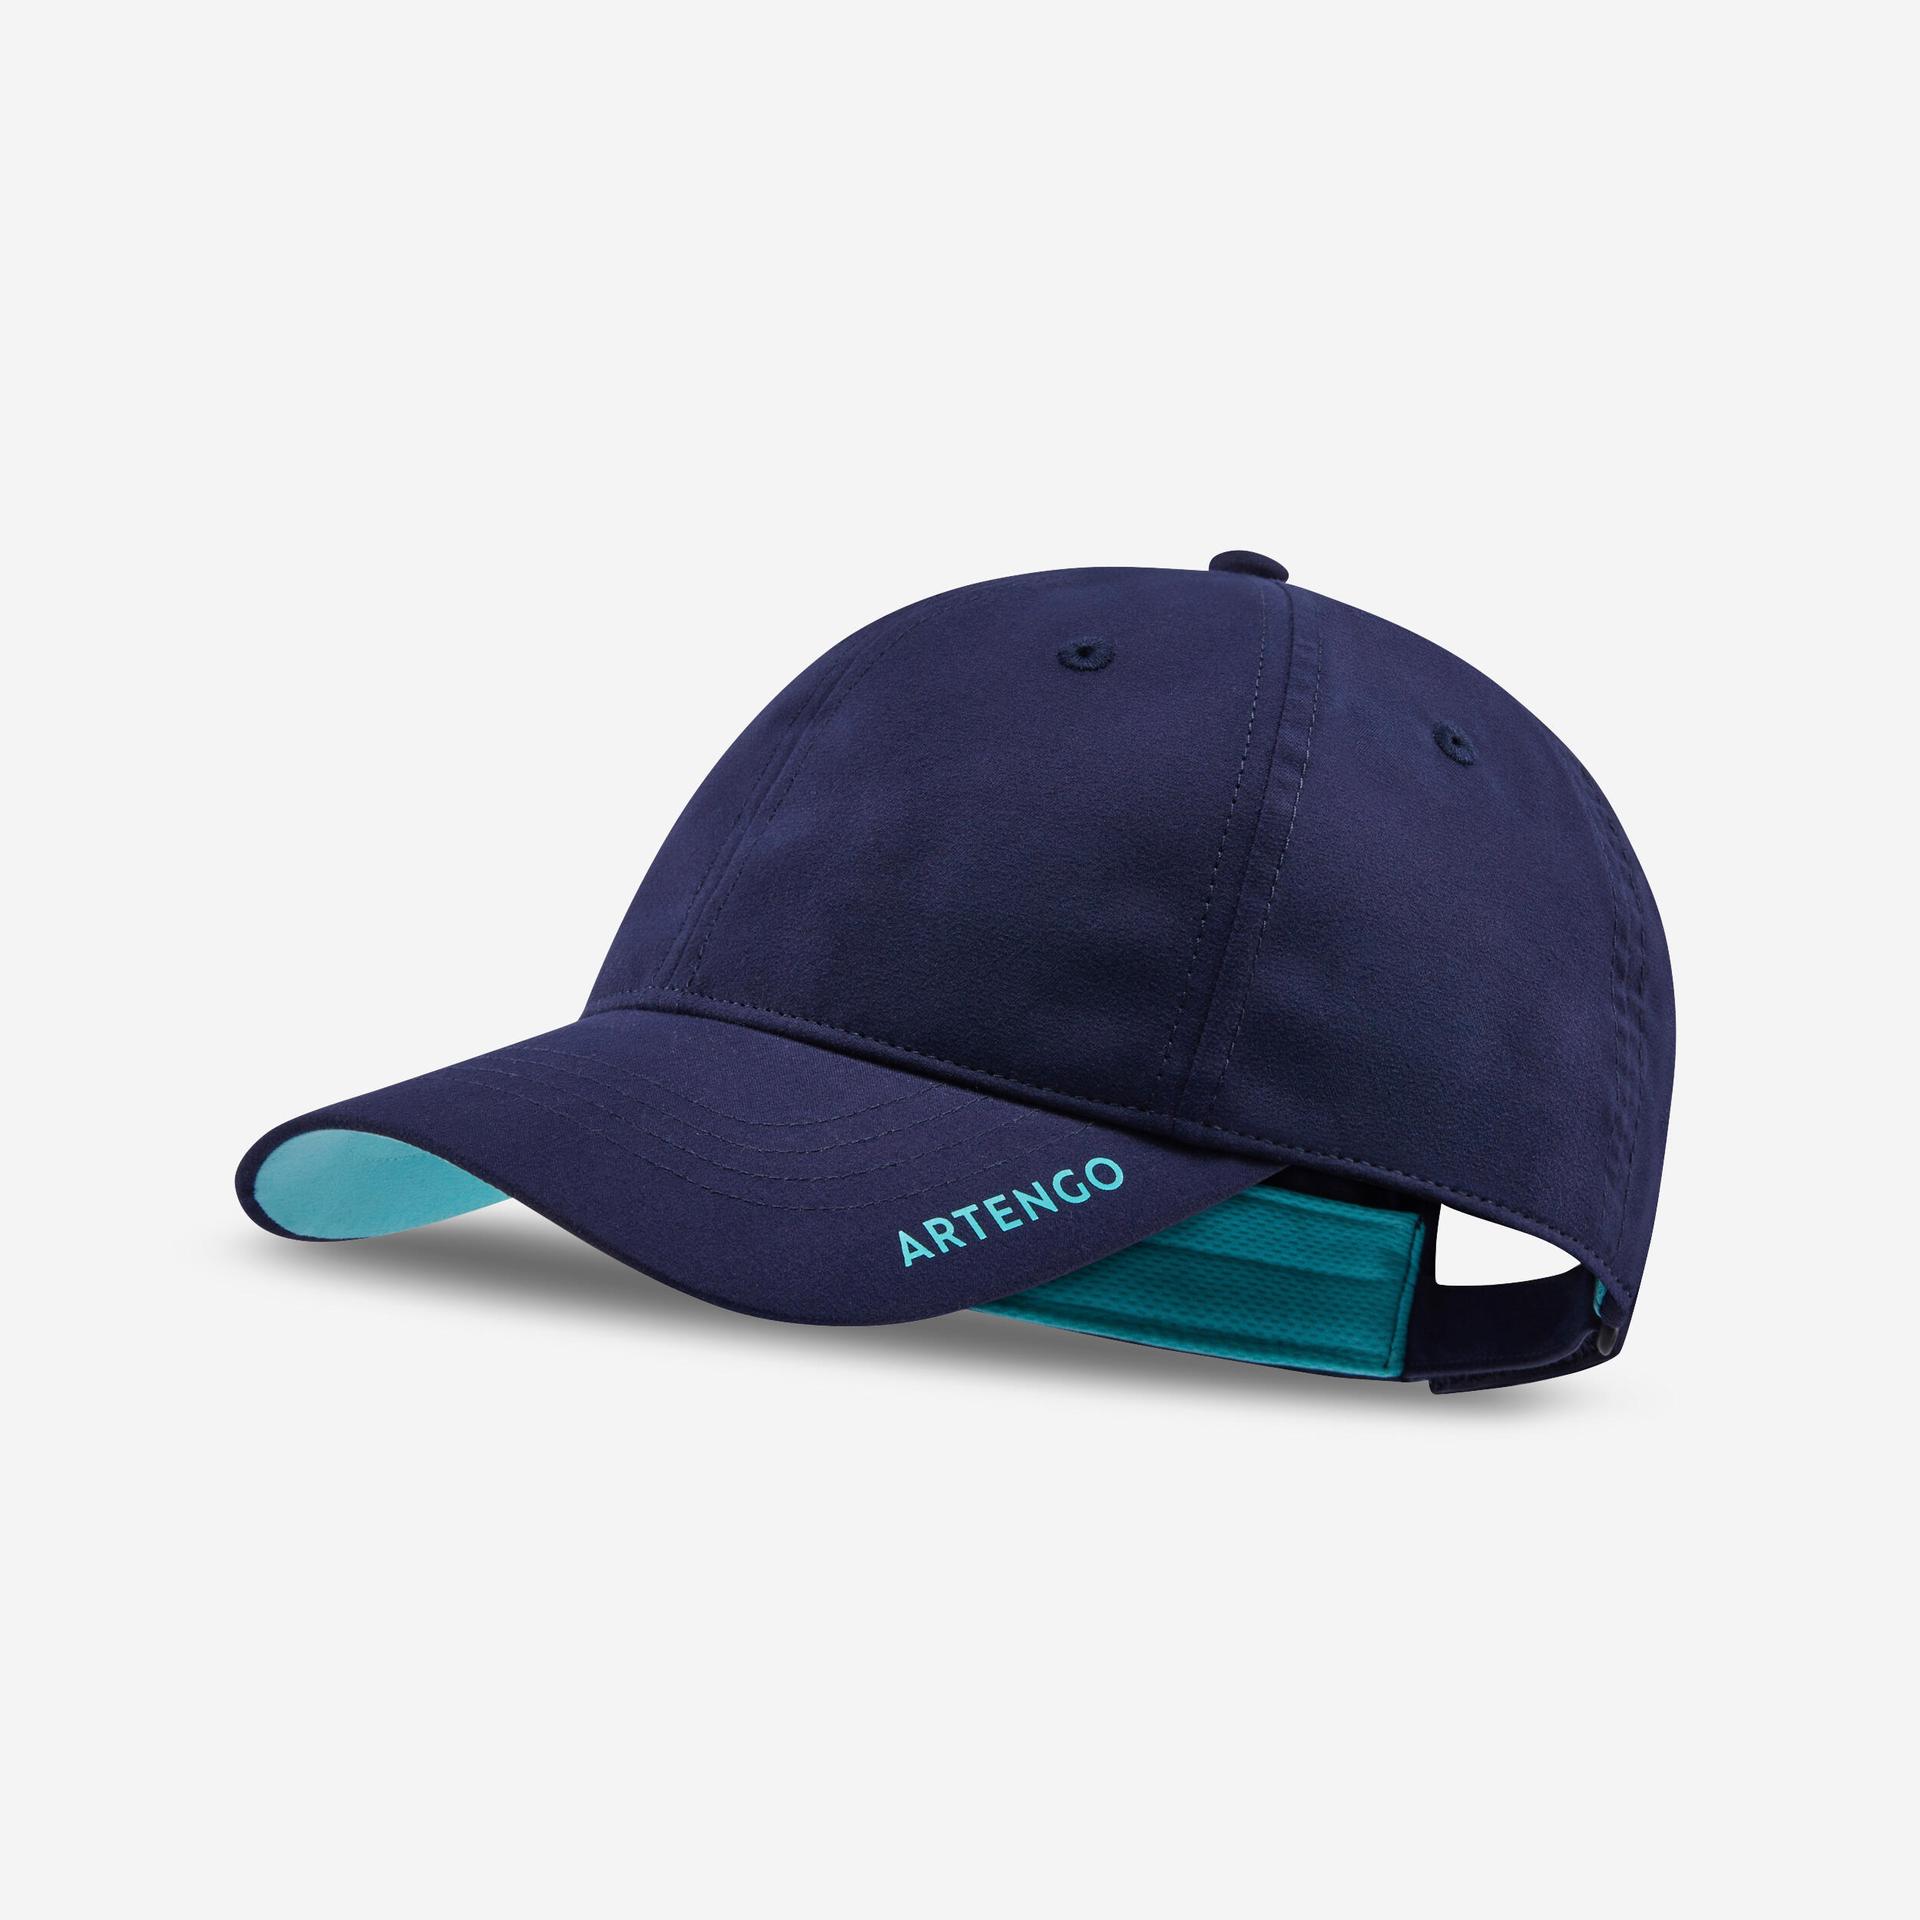 tennis cap medium 500 - navy/turquoise